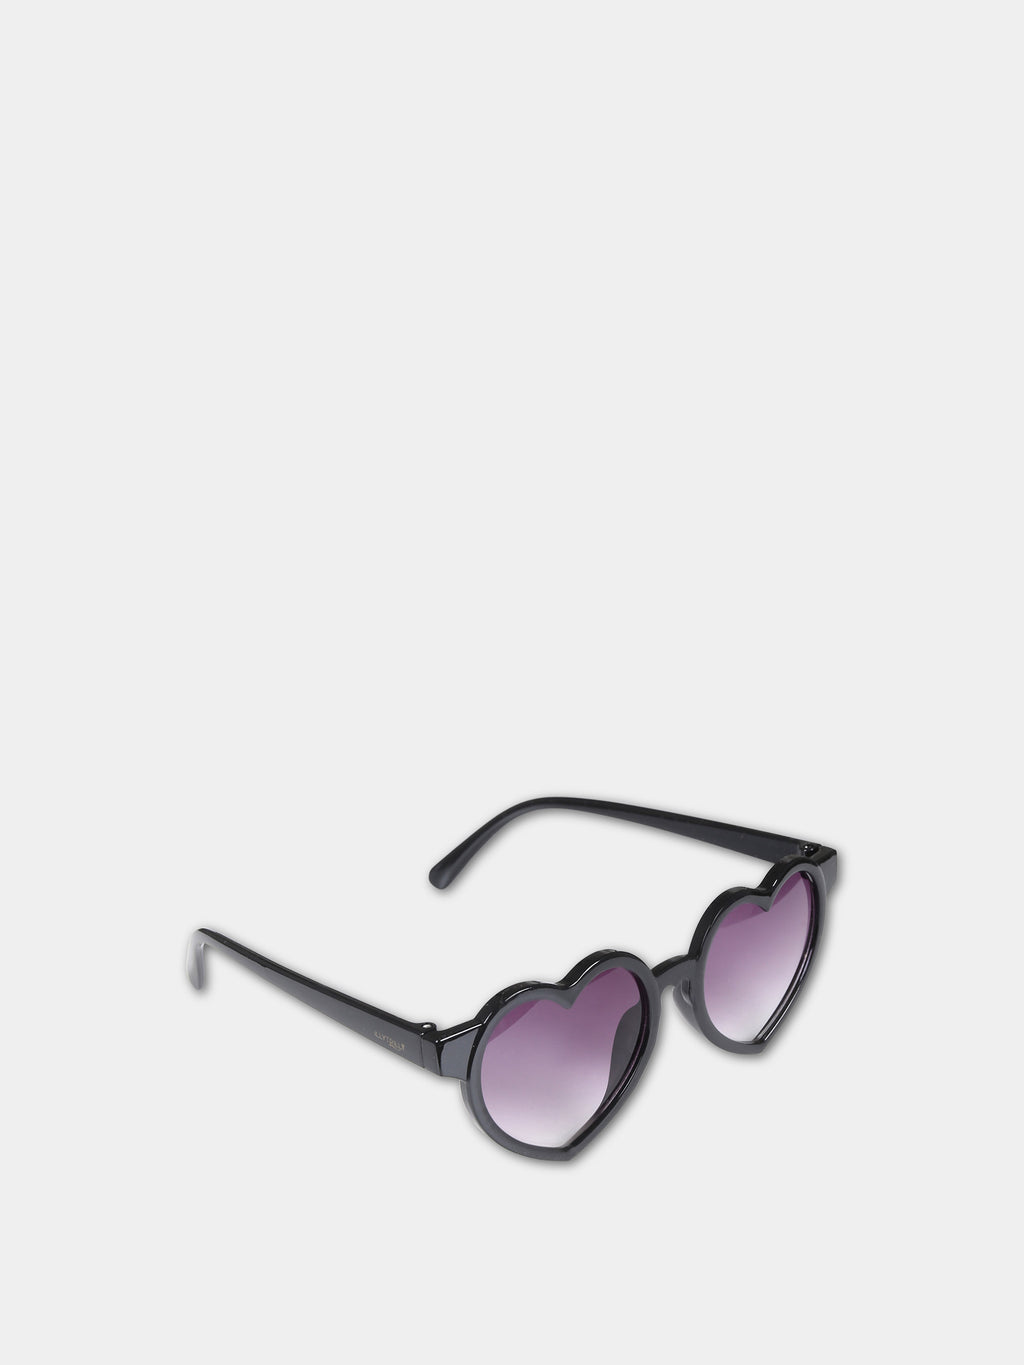 Black sunglasses for girl